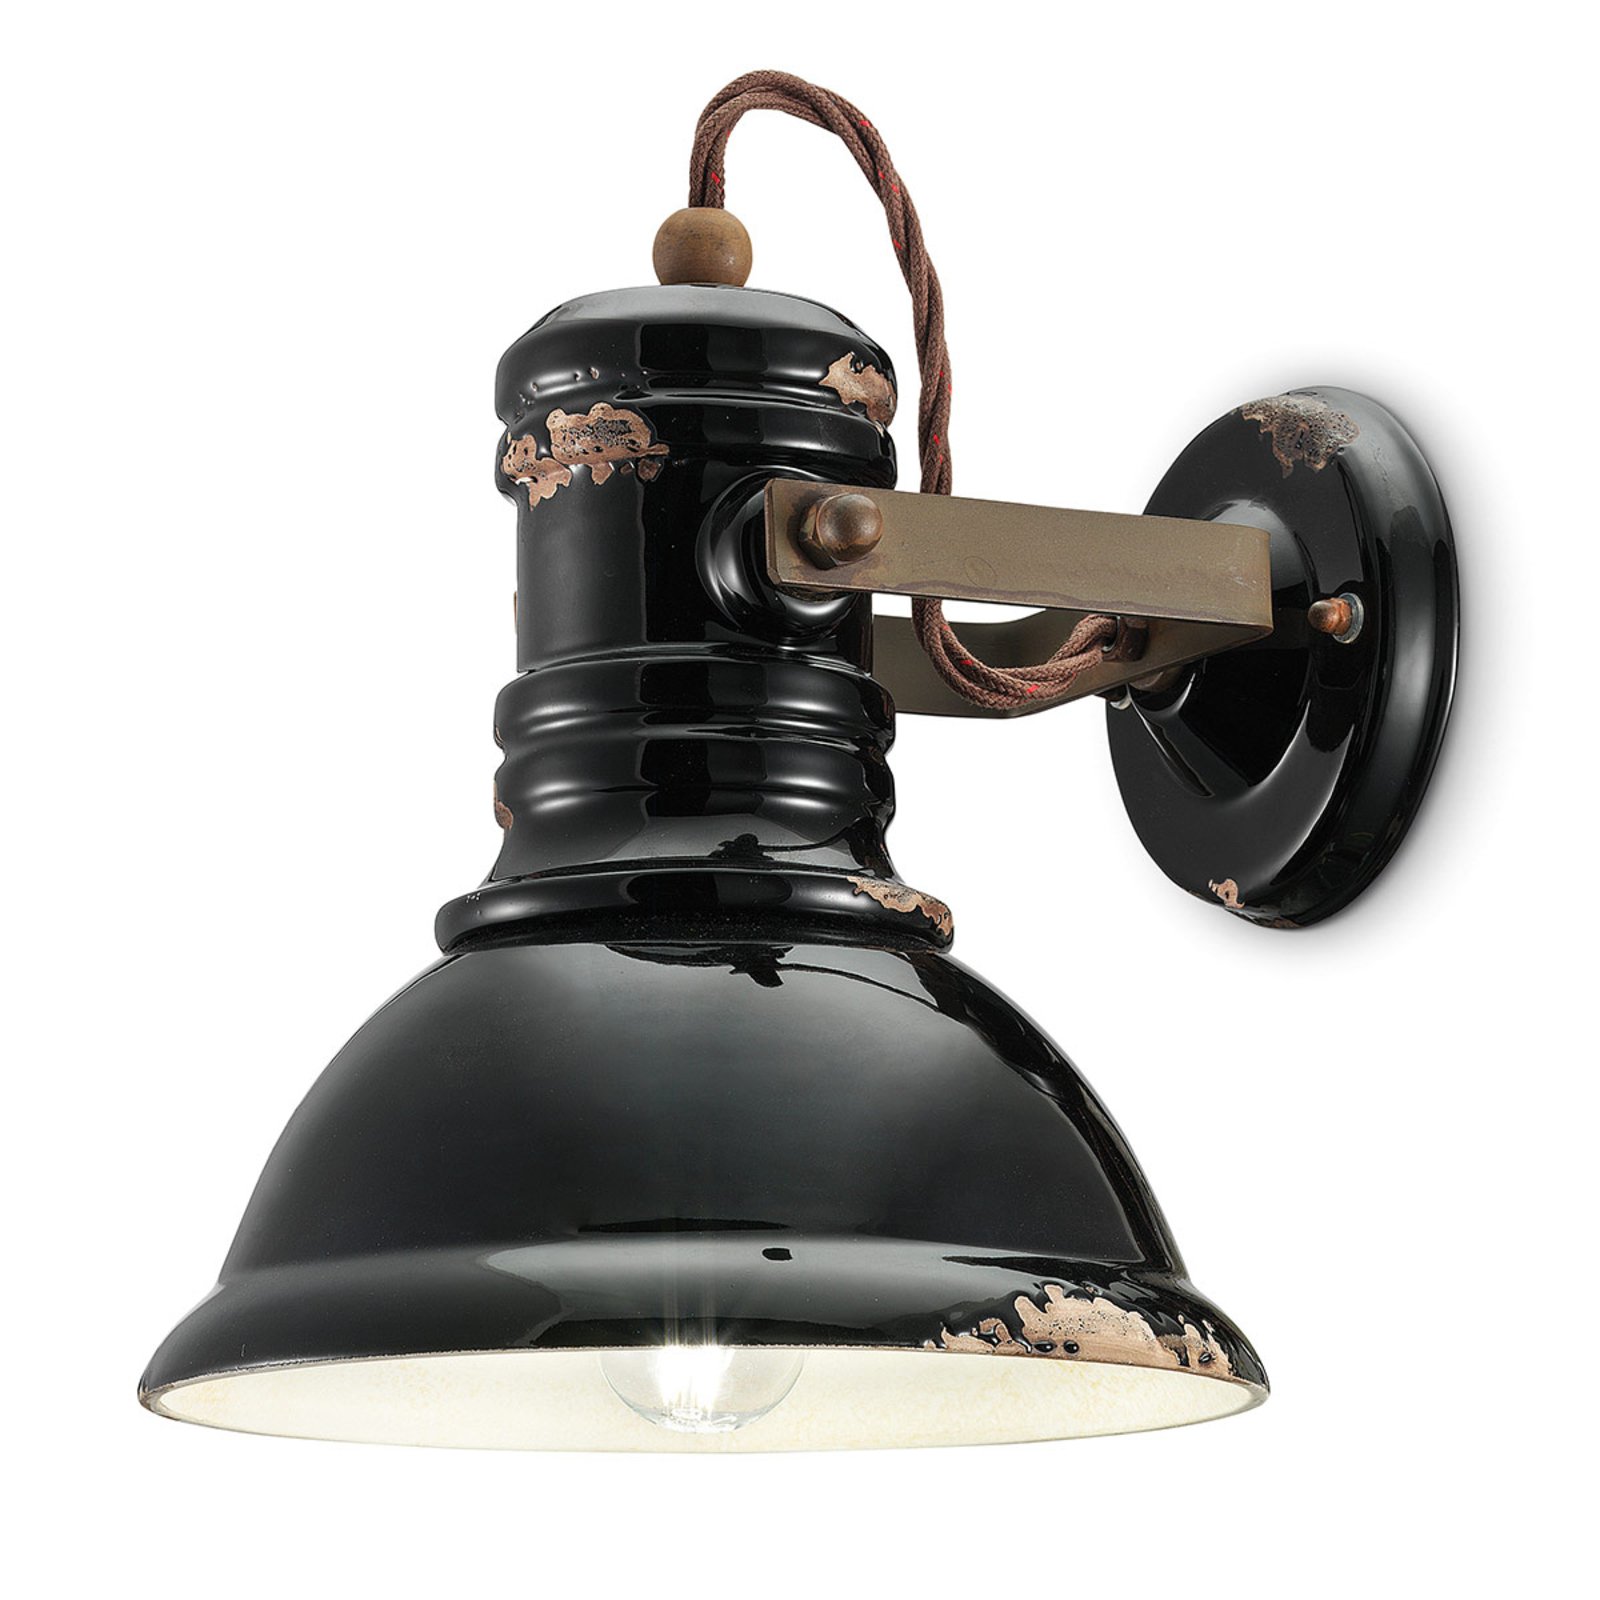 Keramička zidna lampa C1693 u industrijskom stilu crna